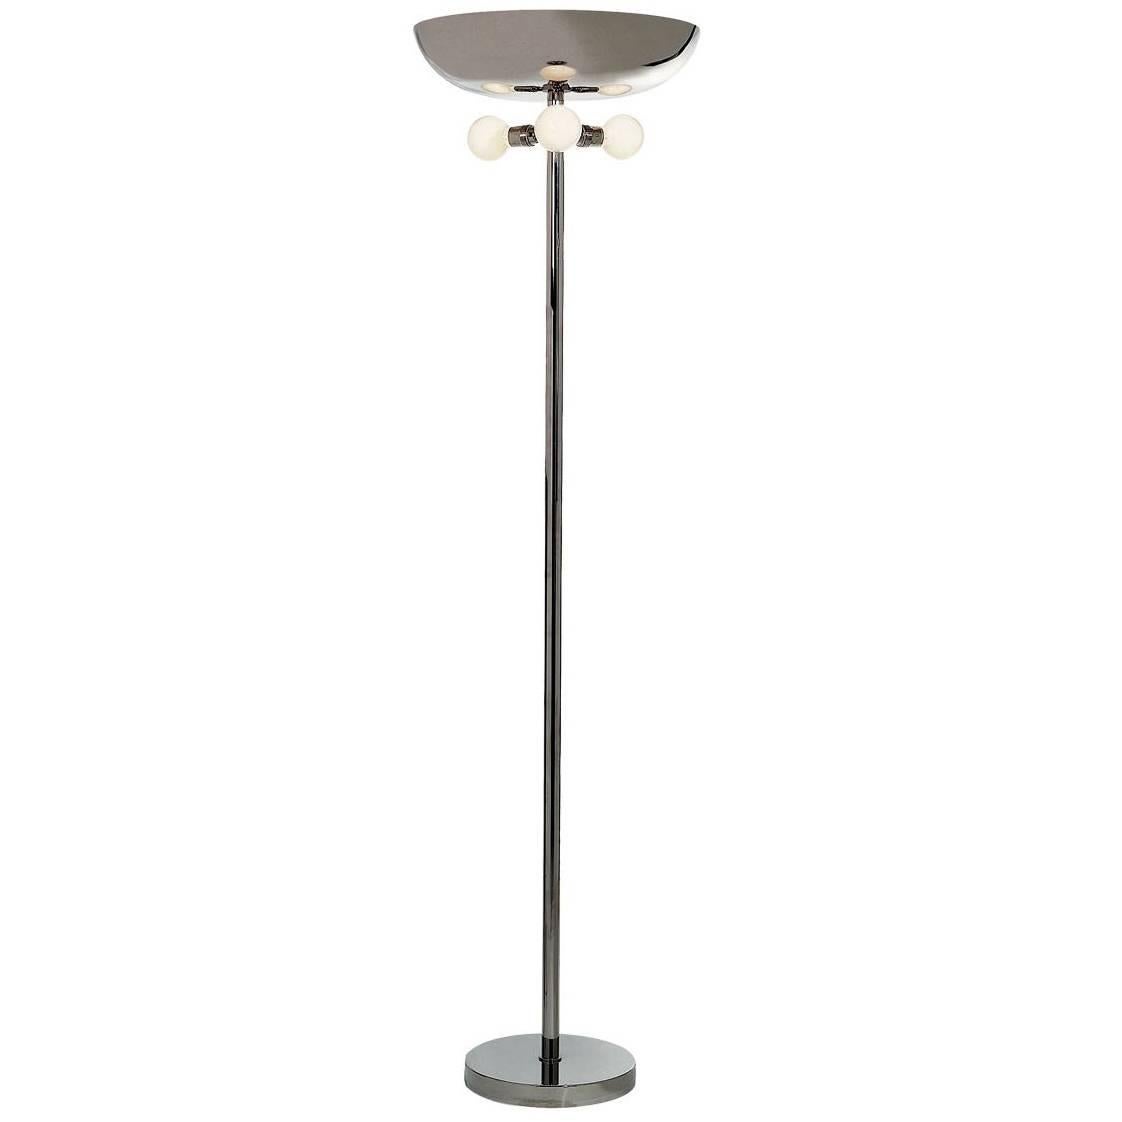 Deutsches Bauhaus Art Deco Style Brass Floor Lamp Torch, Re-Edition For Sale